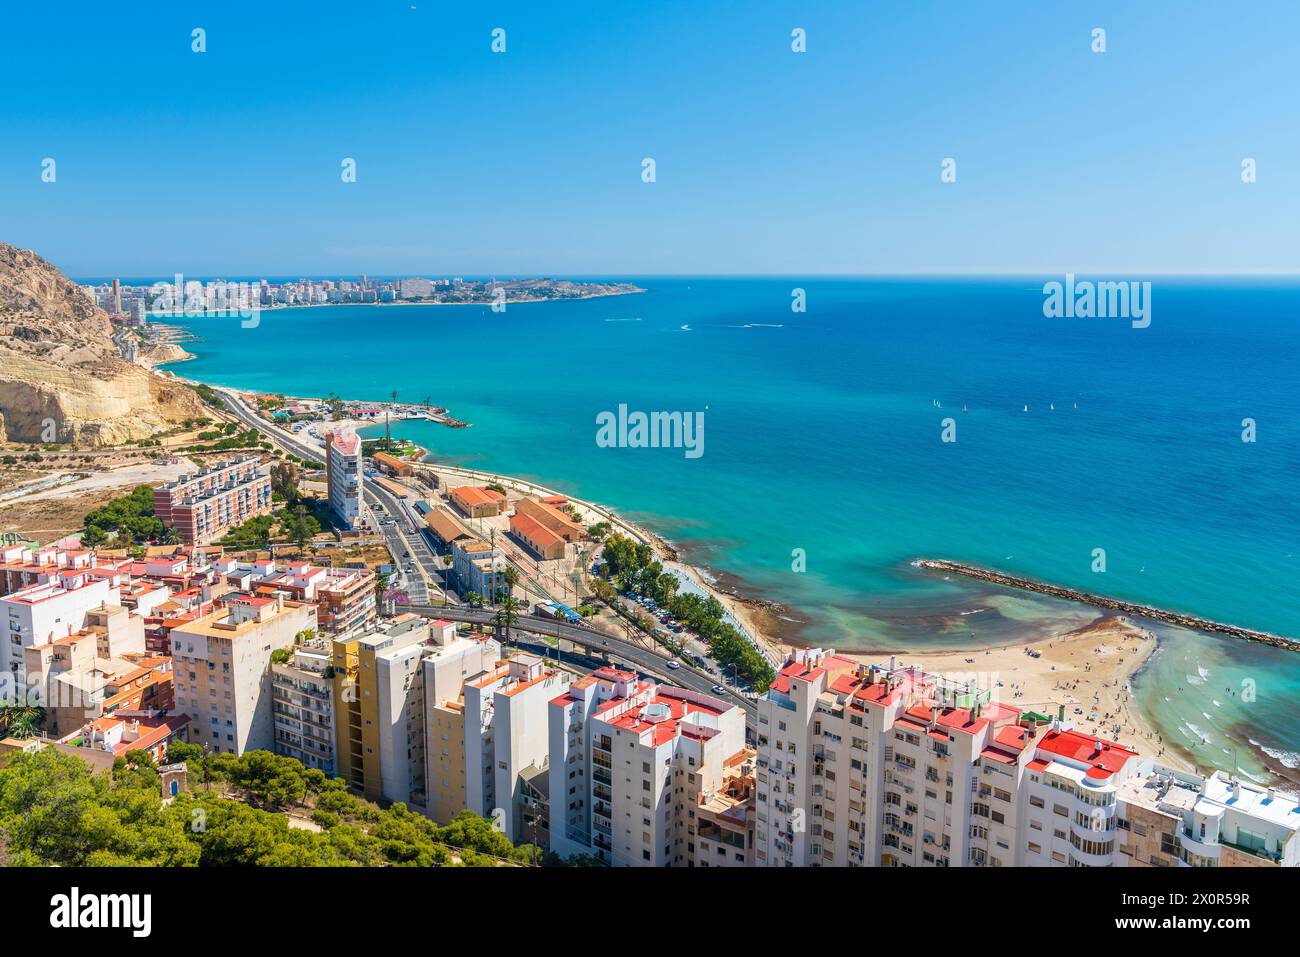 View from Castillo de Santa Barbara, Alicante, Comunidad Valenciana, Alicante district, Costa Blanca, Spain Stock Photo